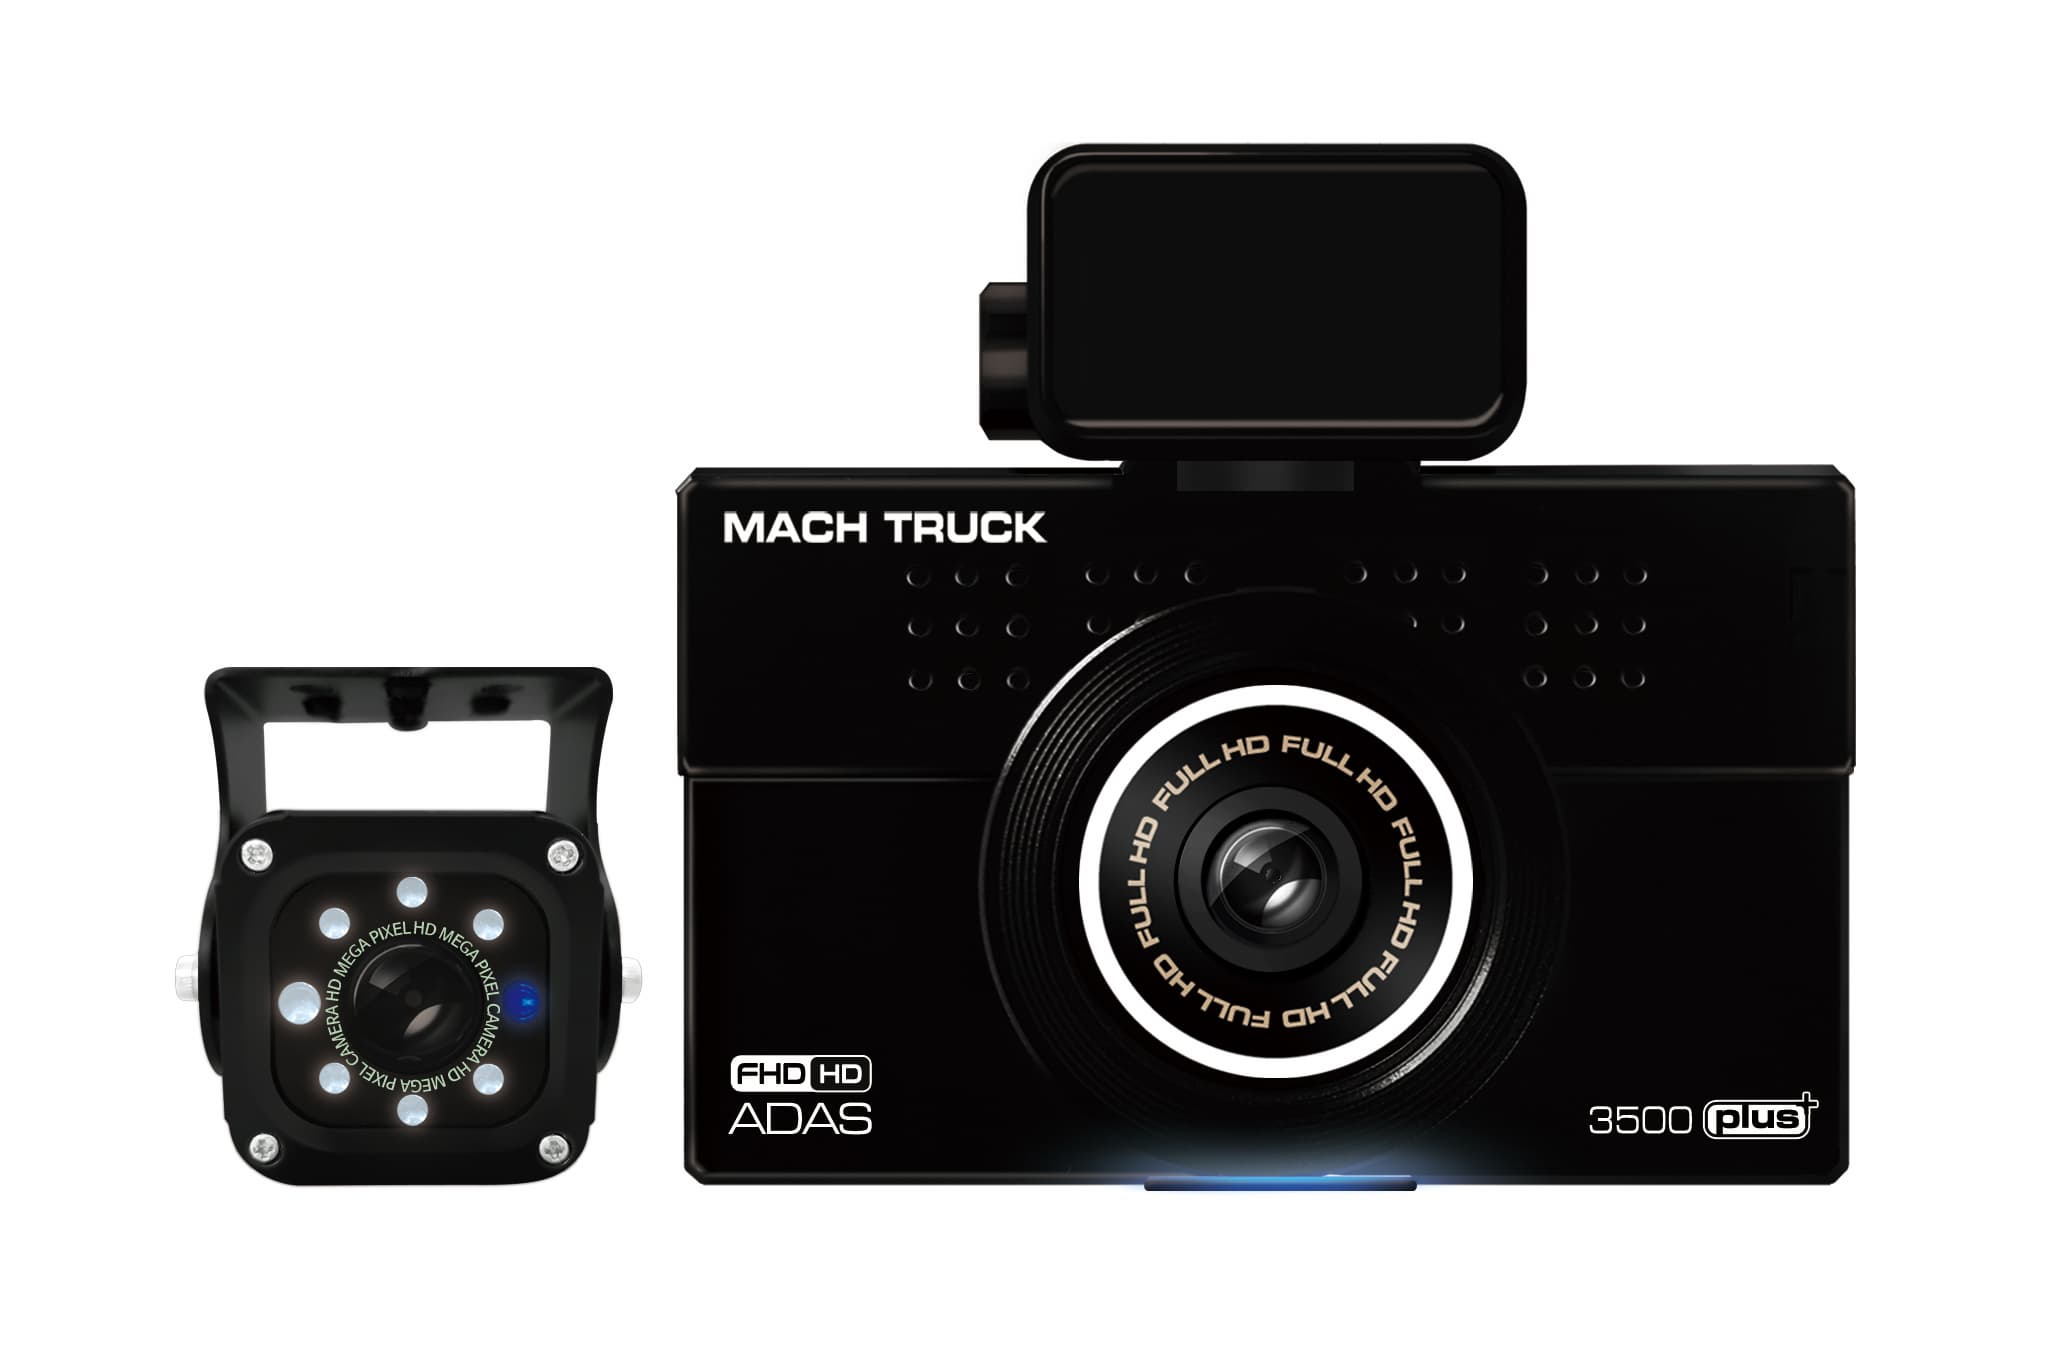 Mach Truck 3500 Plus_ Commercial Vehicle Dash cam